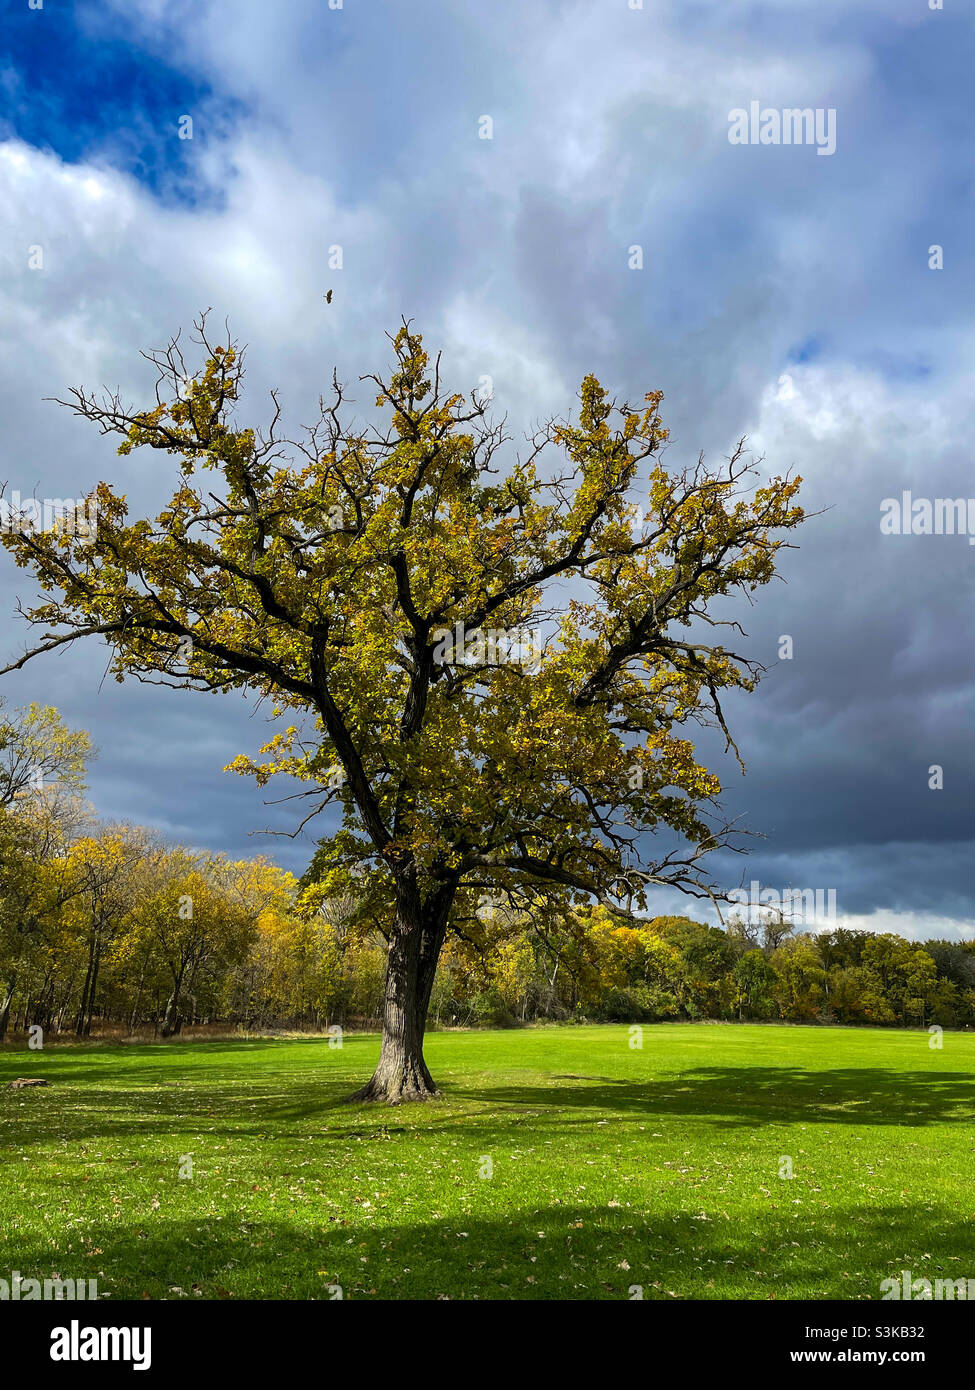 Oak tree in open field with hawk flying over. Stock Photo